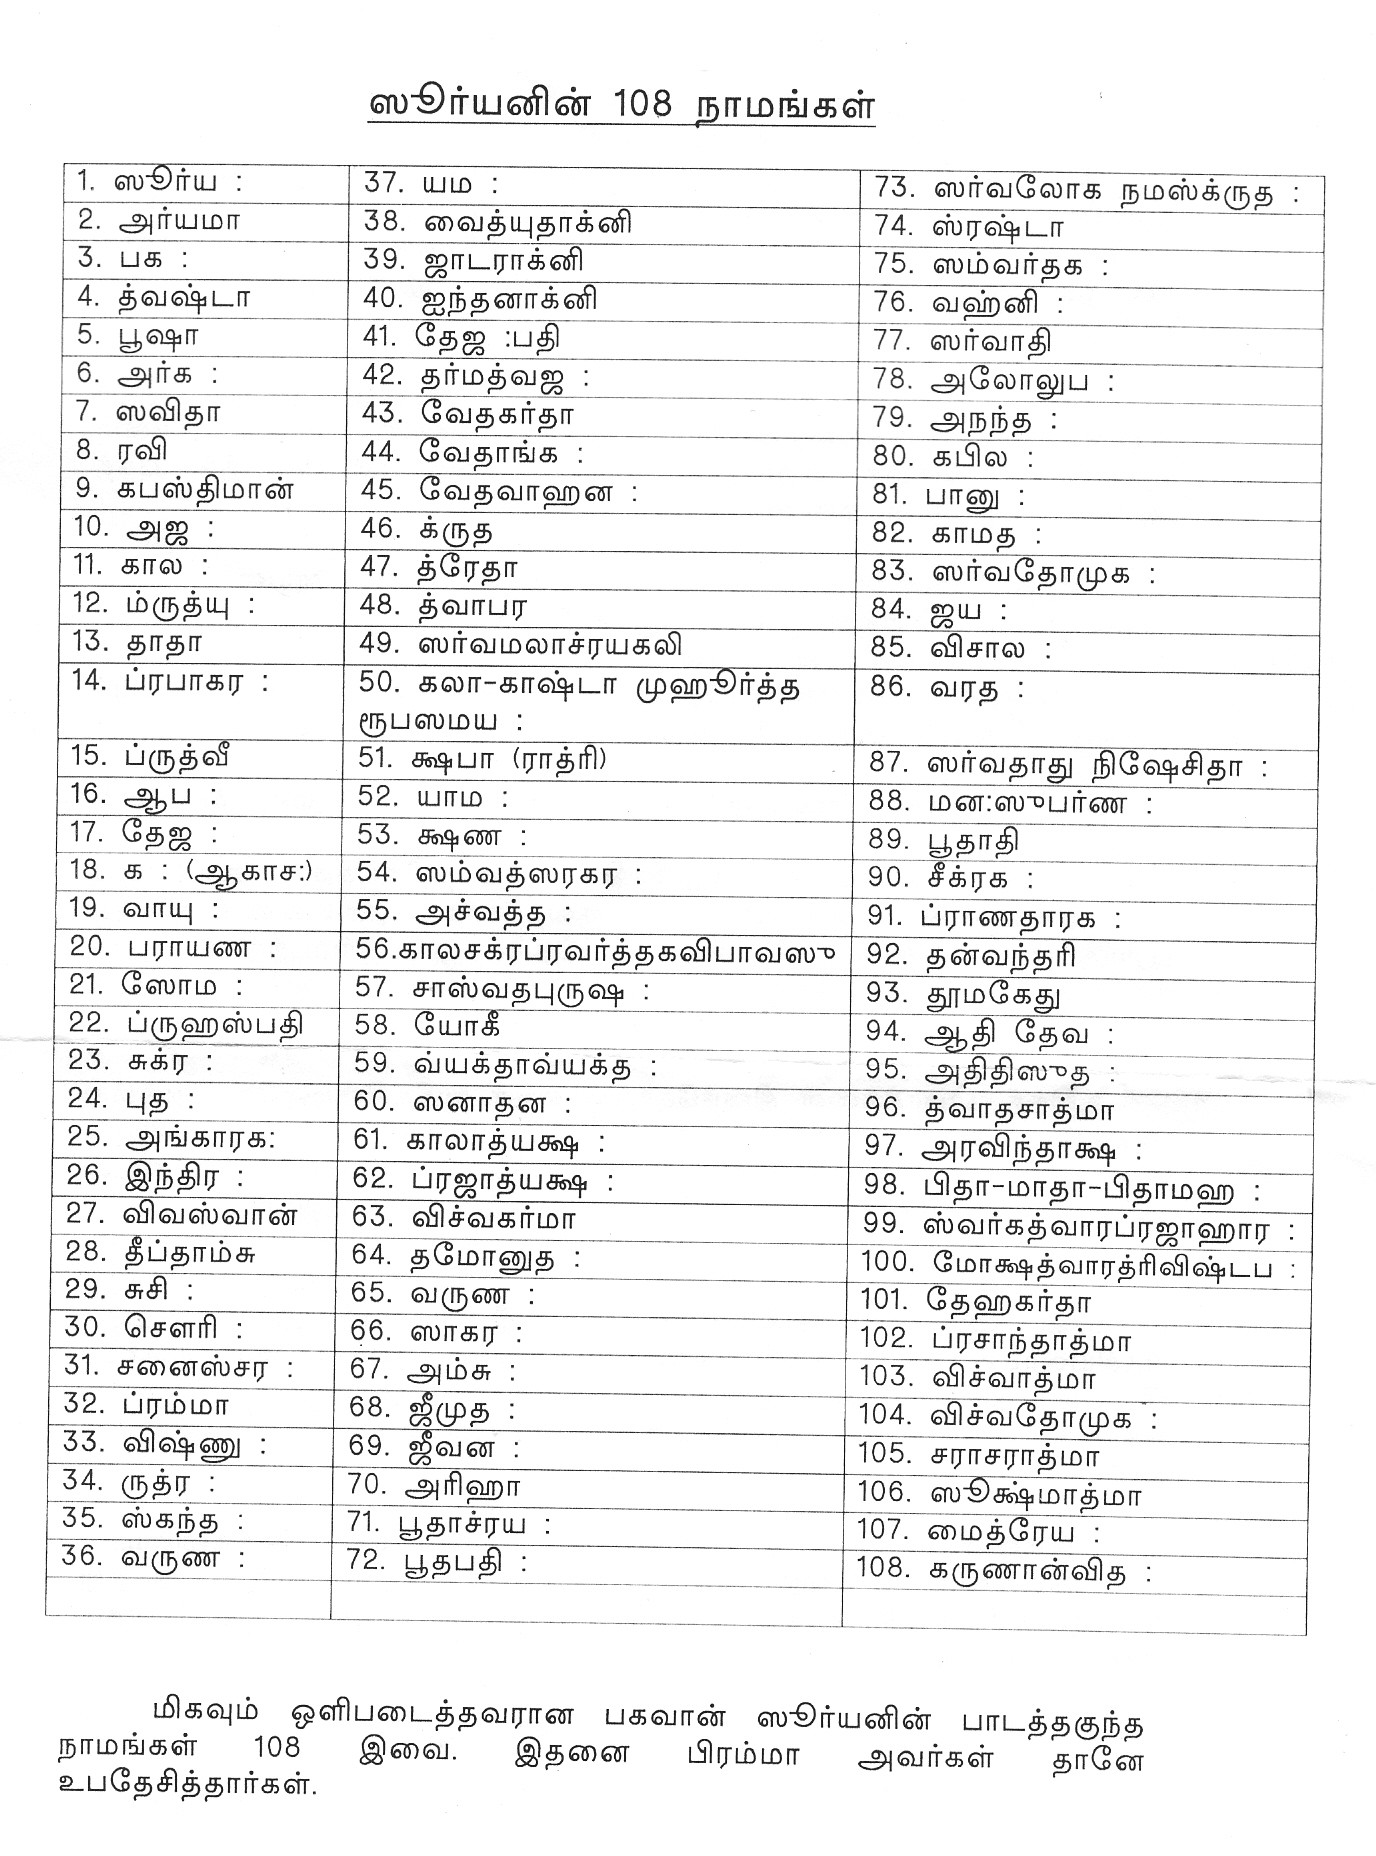 1008 Names Of Lord Venkateswara Pdf Freel